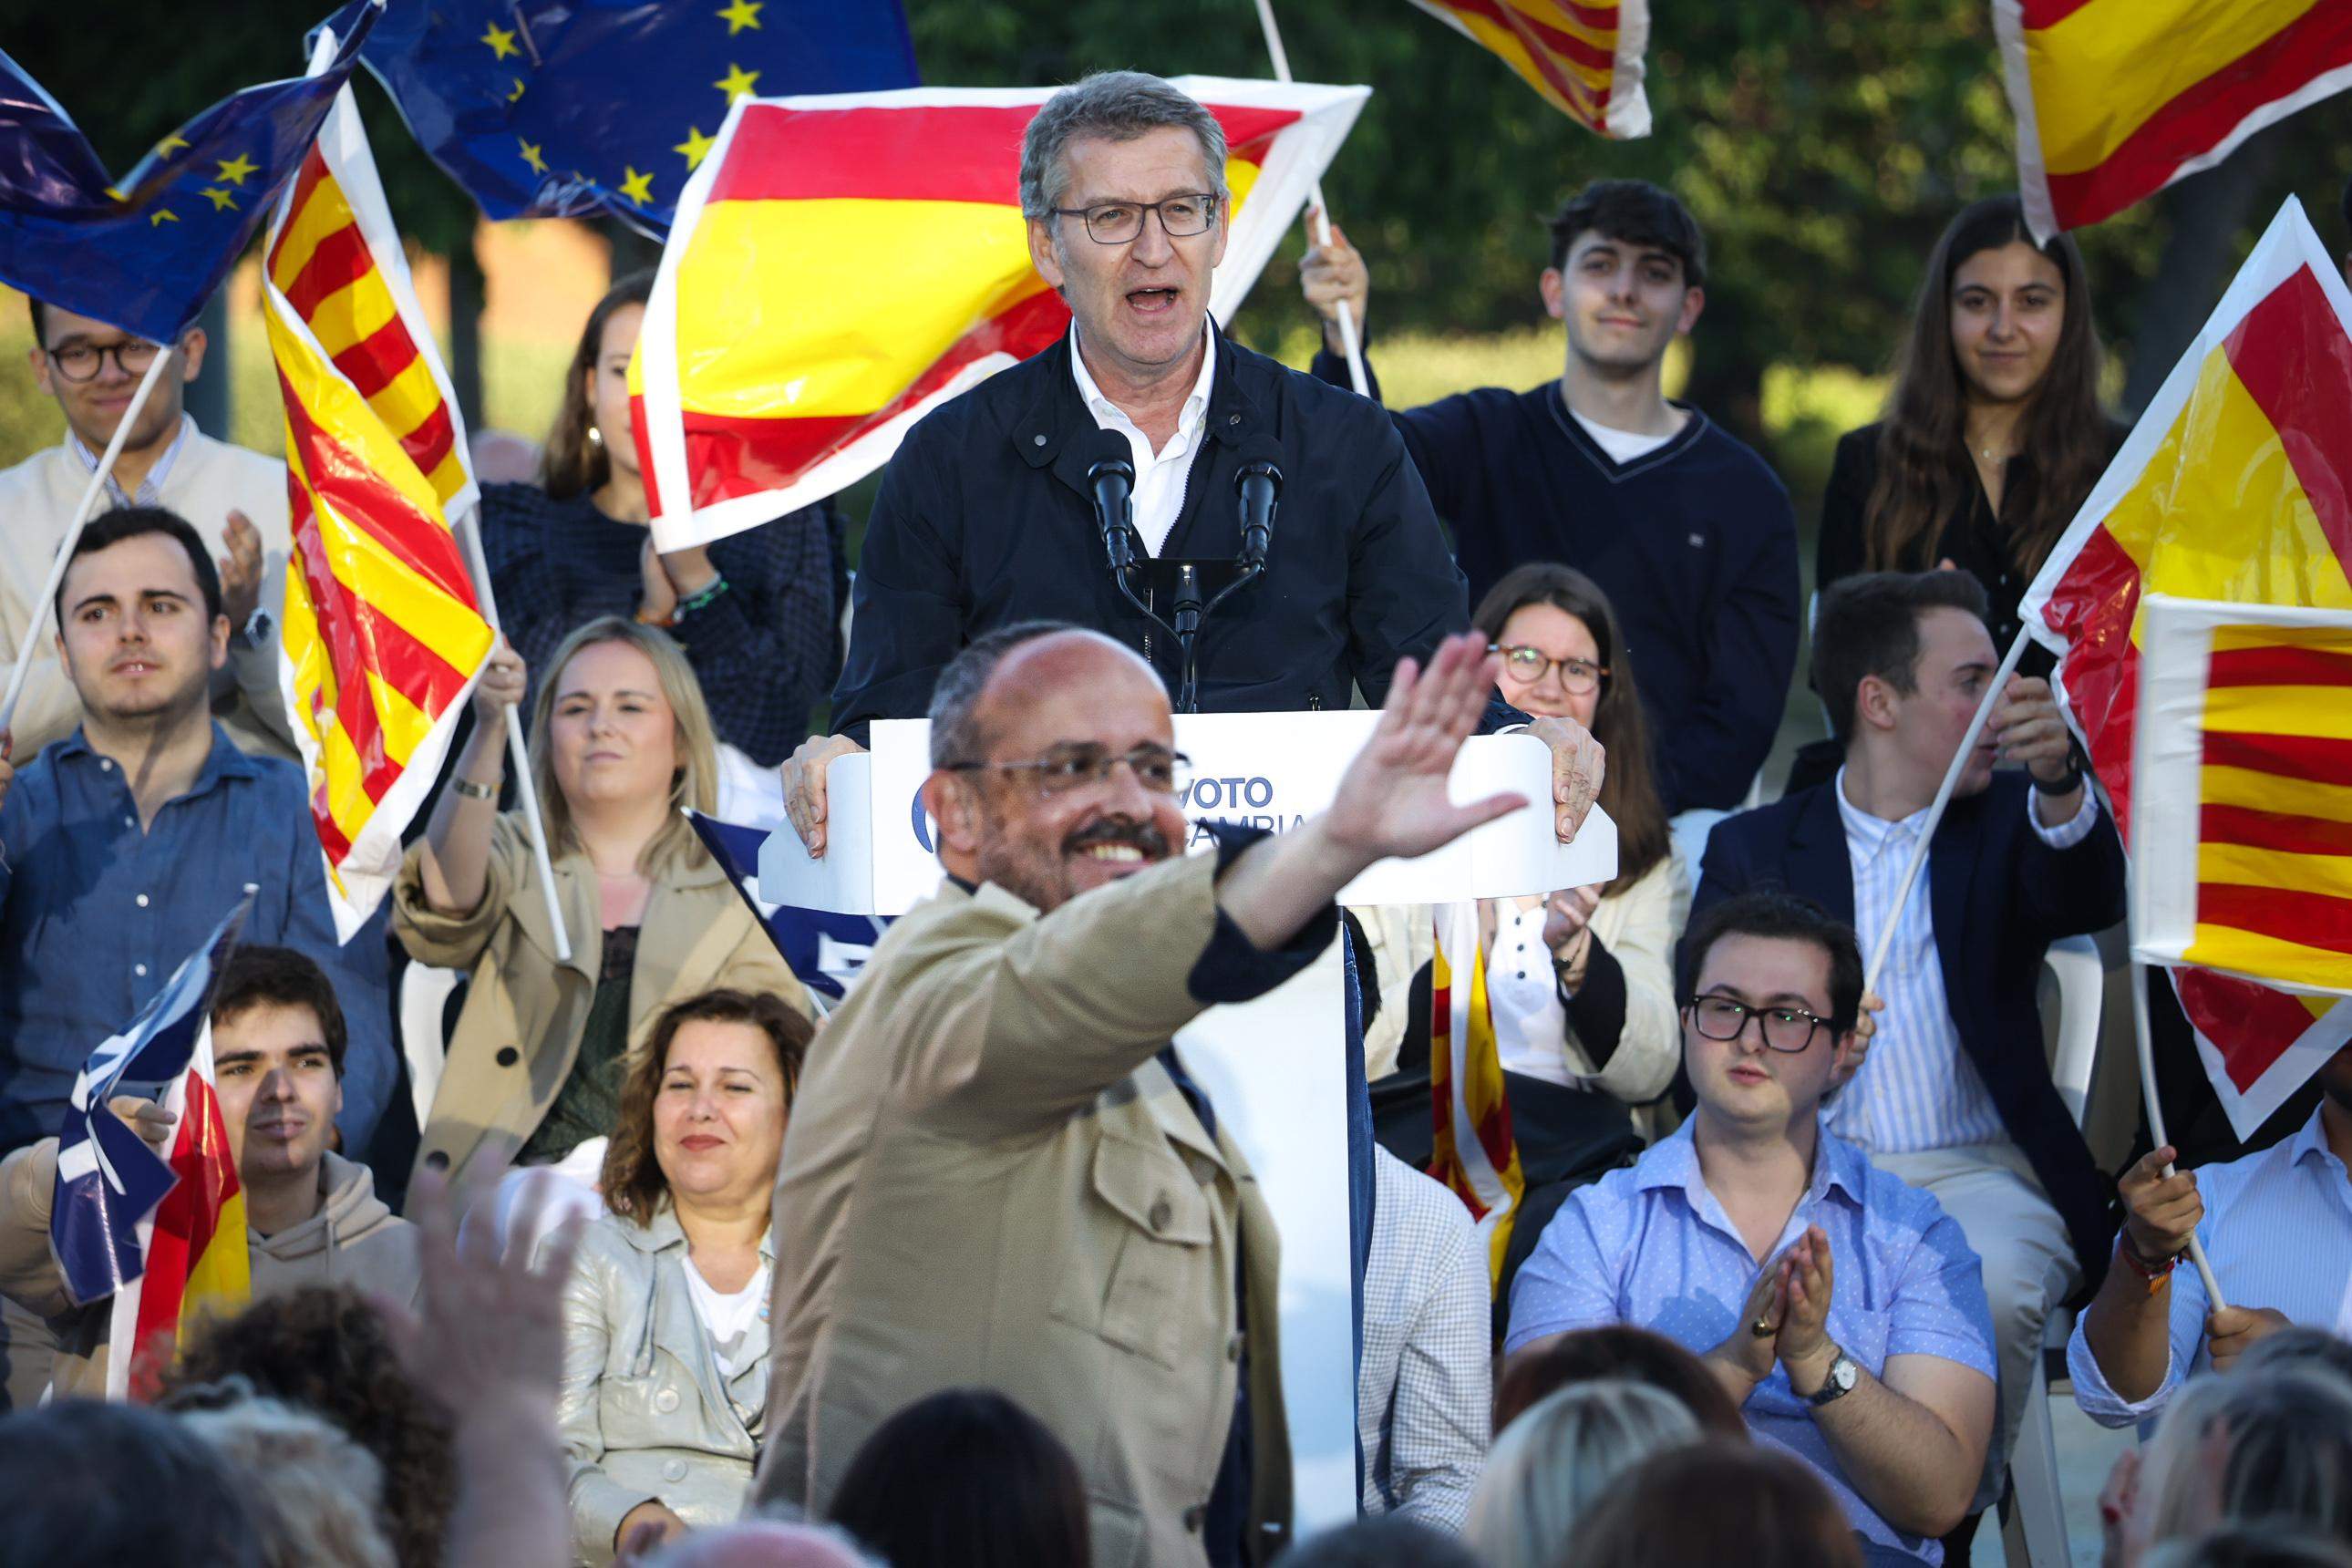 Alberto Núñez Feijóo reclama els vots de Cs: “Avui Ciutadans és el Partit Popular de Catalunya”